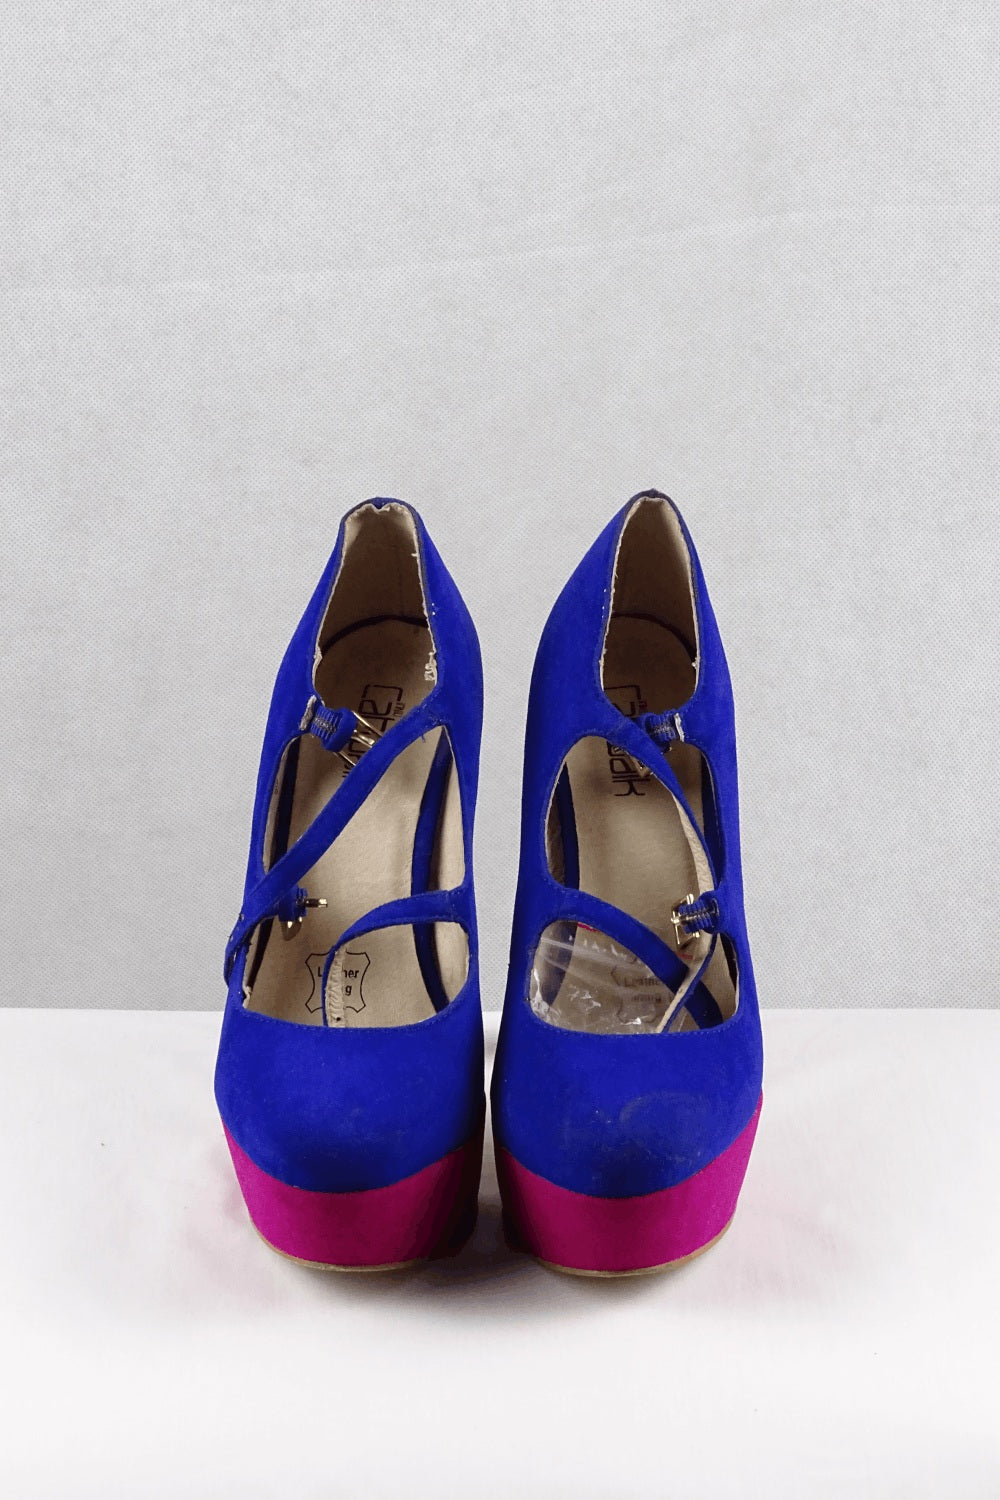 Catwalk Pink And Blue Stilettos 5